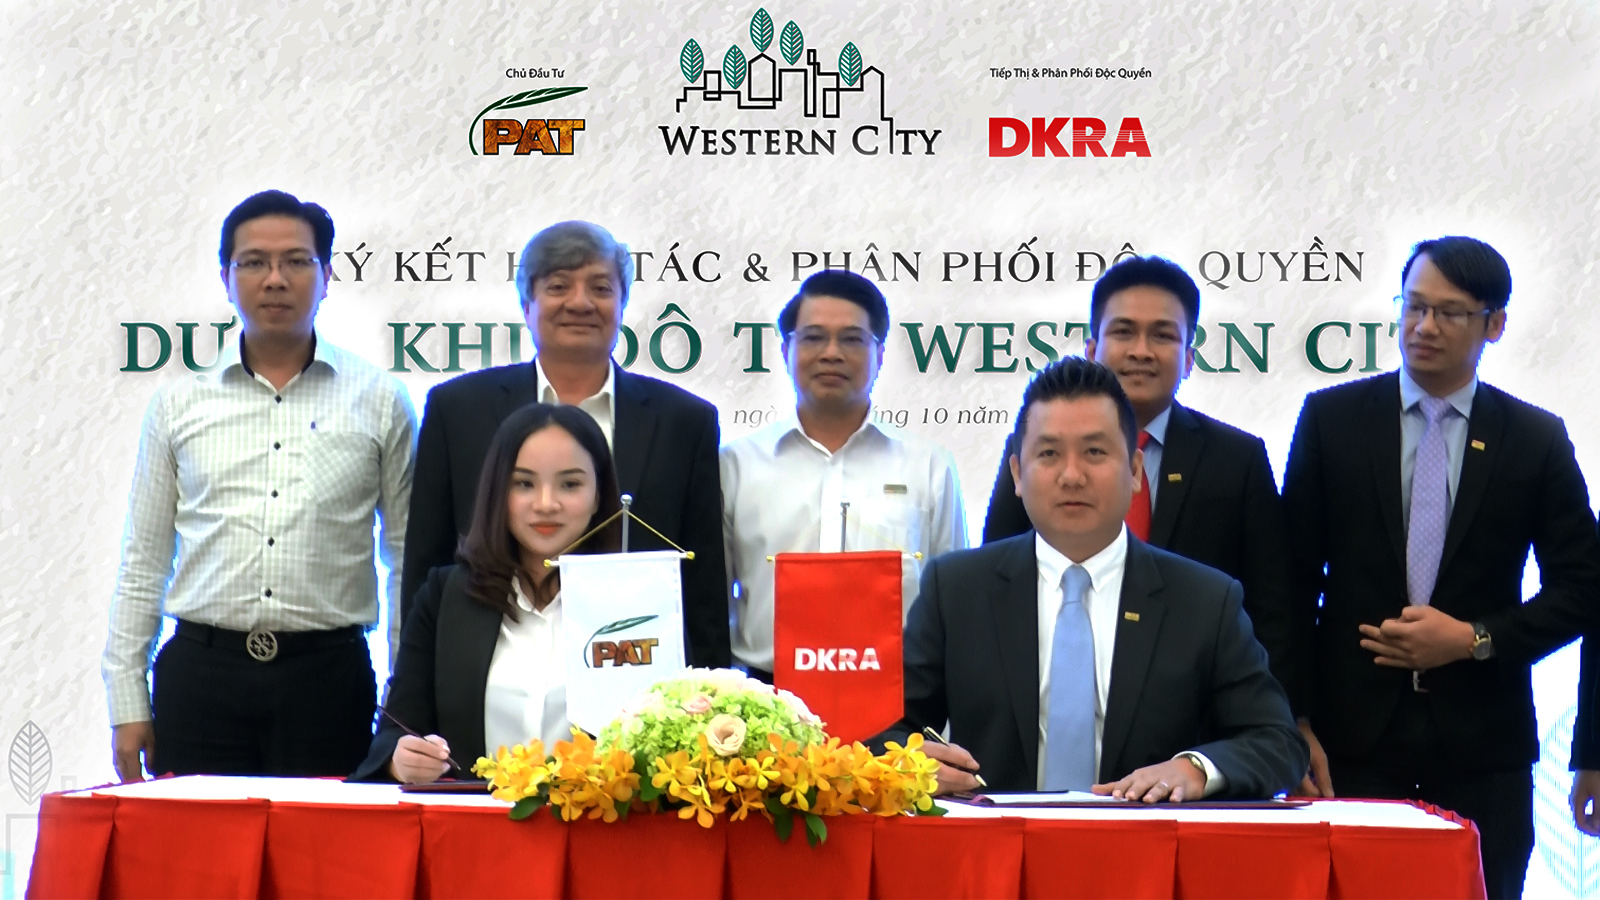 Công ty Cổ phần DKRA Việt Nam và Công ty TNHH MTV Phú An Thạnh – Long An đã chính thức ký kết hợp tác Tiếp thị & phân phối độc quyền dự án Khu đô thị Western City